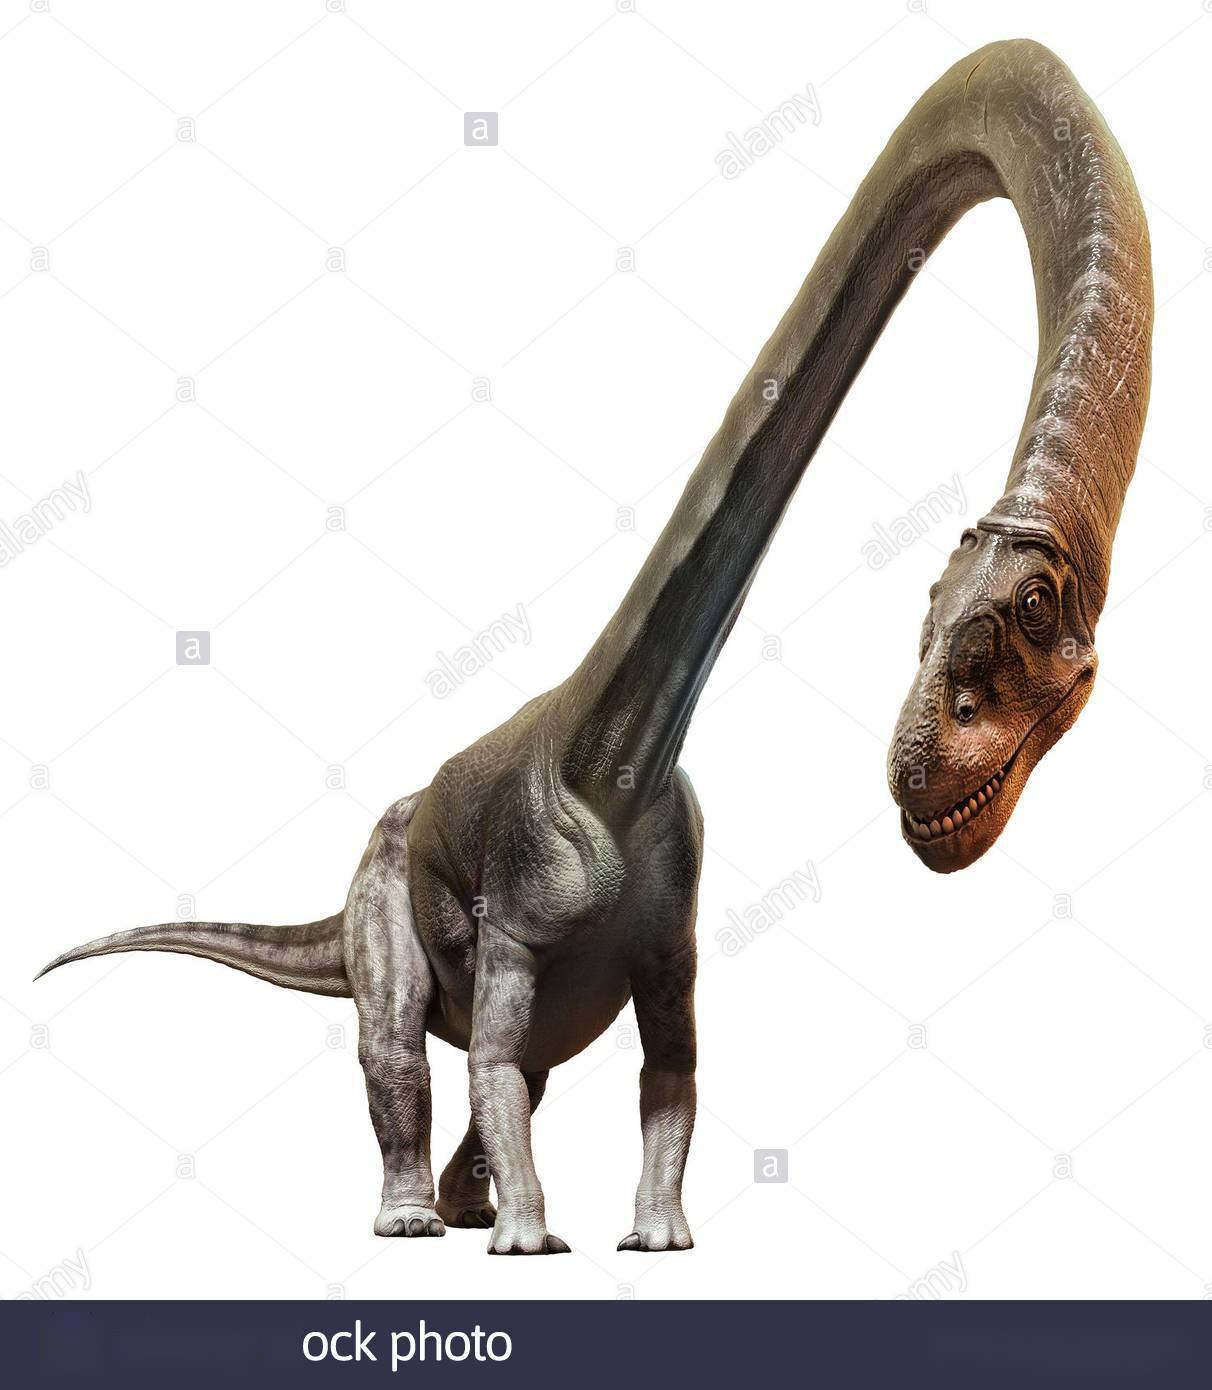 龙没什么两样,但是其化石上依然拥有独特特征,包括了所有荐前椎后凹